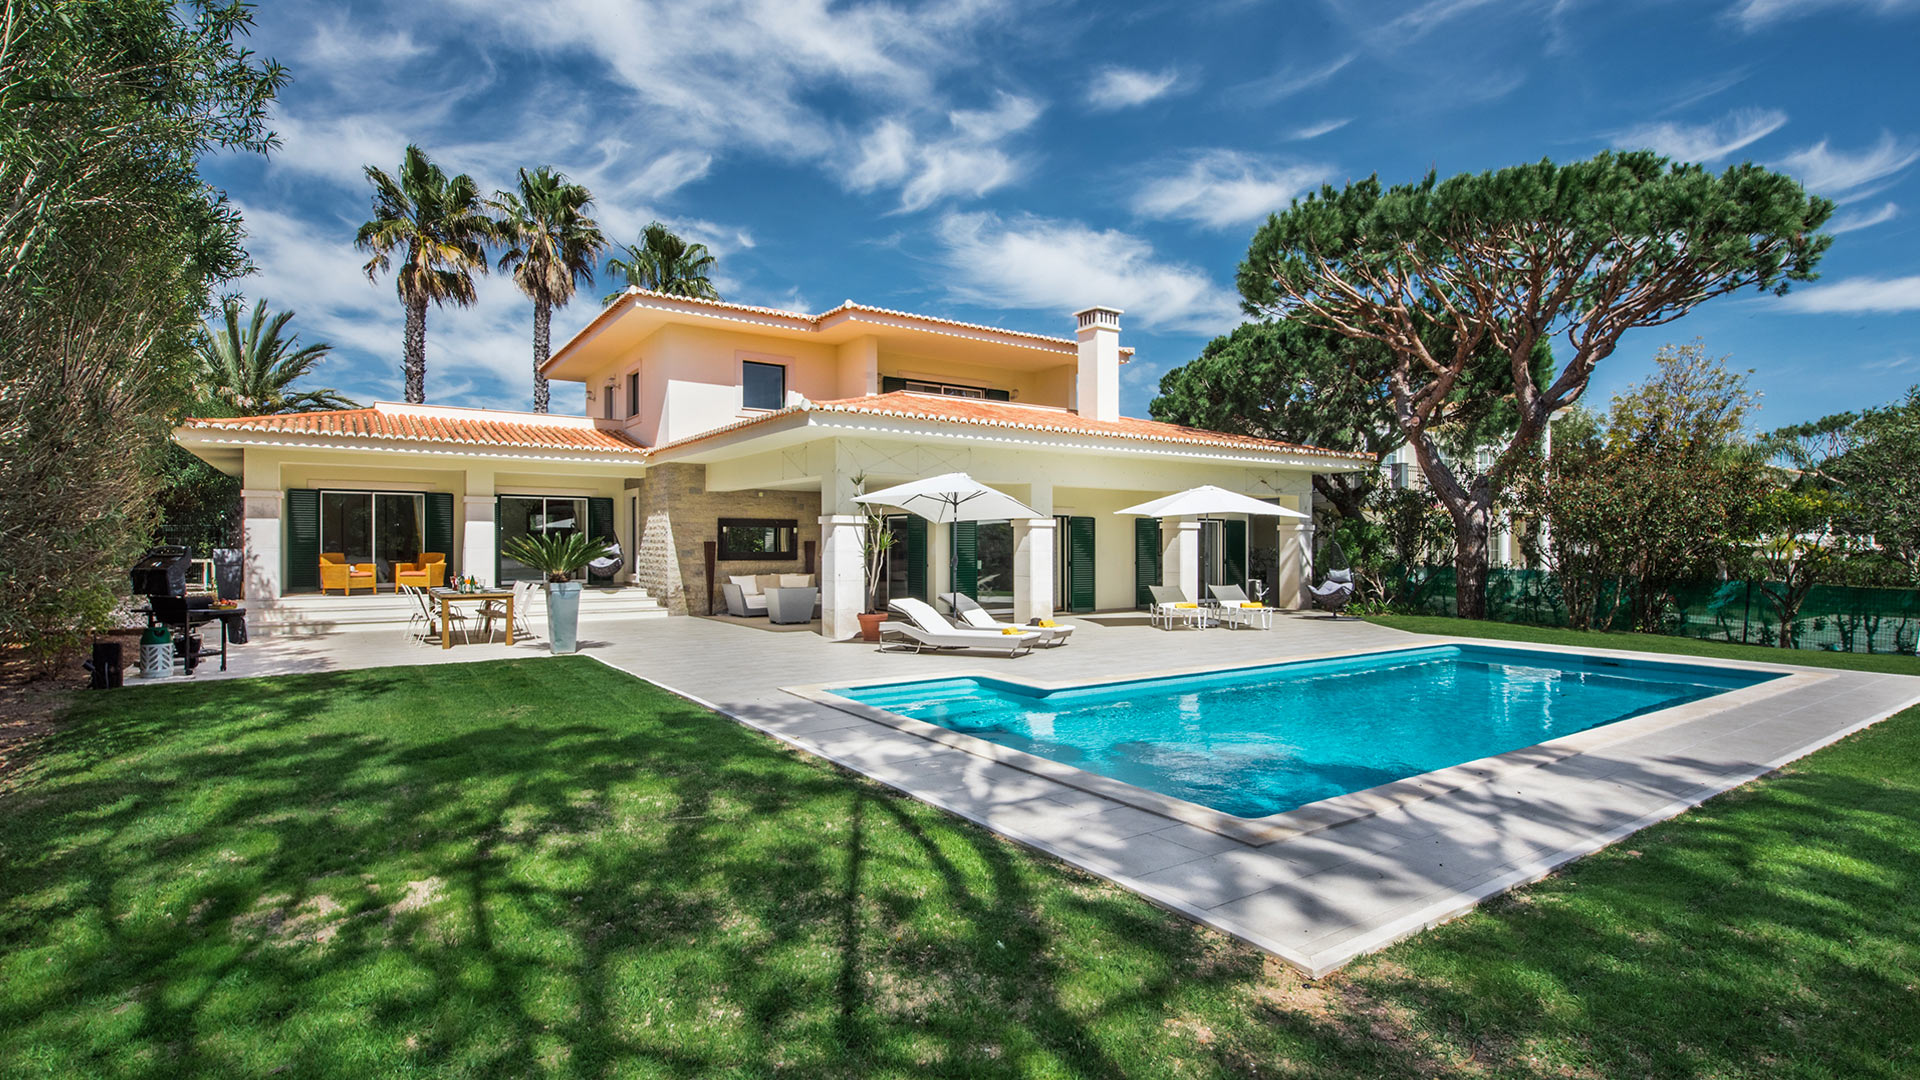 Villa Villa Aleita, Rental in Algarve